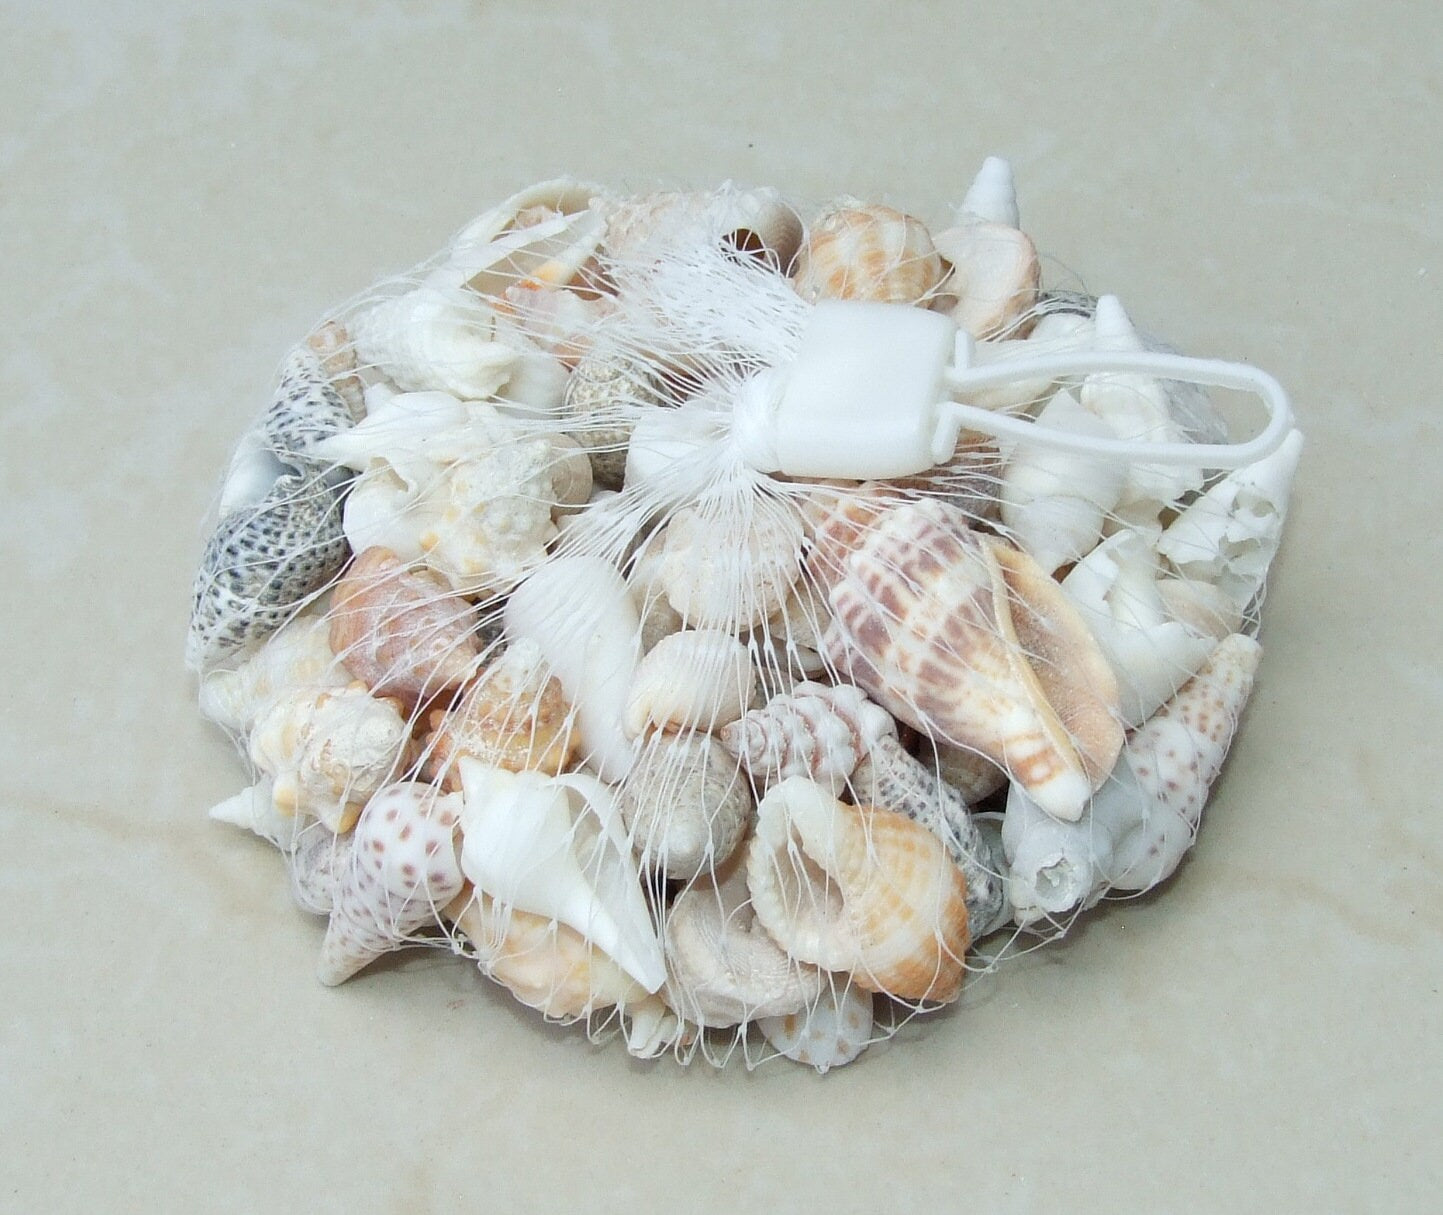 Net Full of Shells, Mixed Natural Seashells, Spiral Shells, Clam Shells, Scallop Shells, Undrilled Craft Shells, 80-100 Shells, 15-40+mm 015